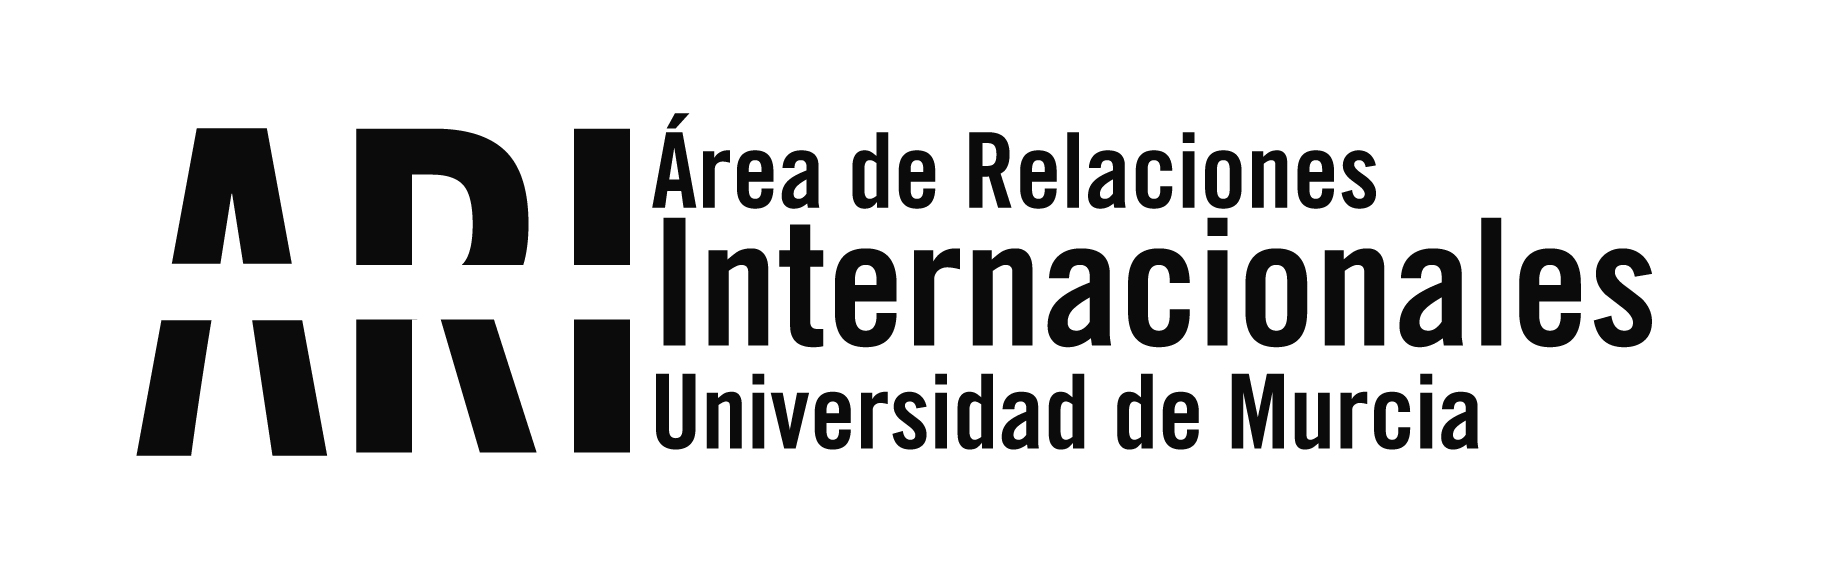 II Encuentro ISEP IBERIA - Área de Relaciones Internacionales